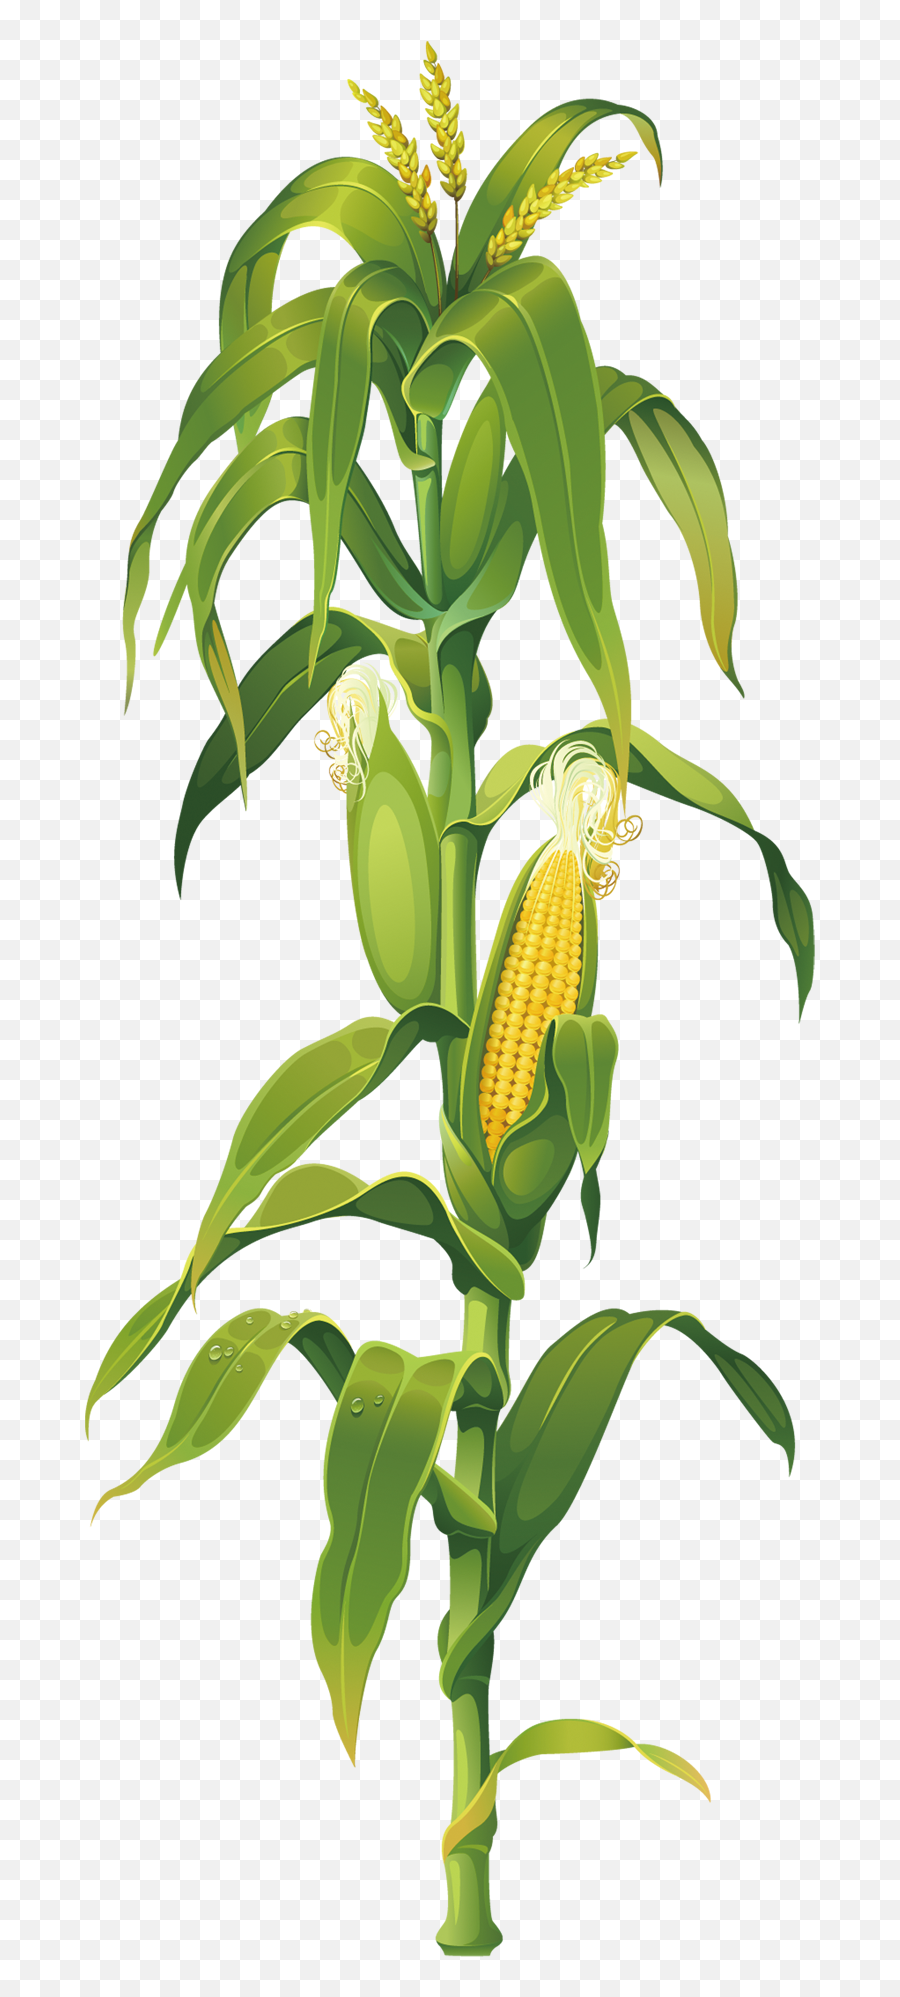 Maize Corn - Corn Plant Drawing Emoji,Corn Cob Emoji